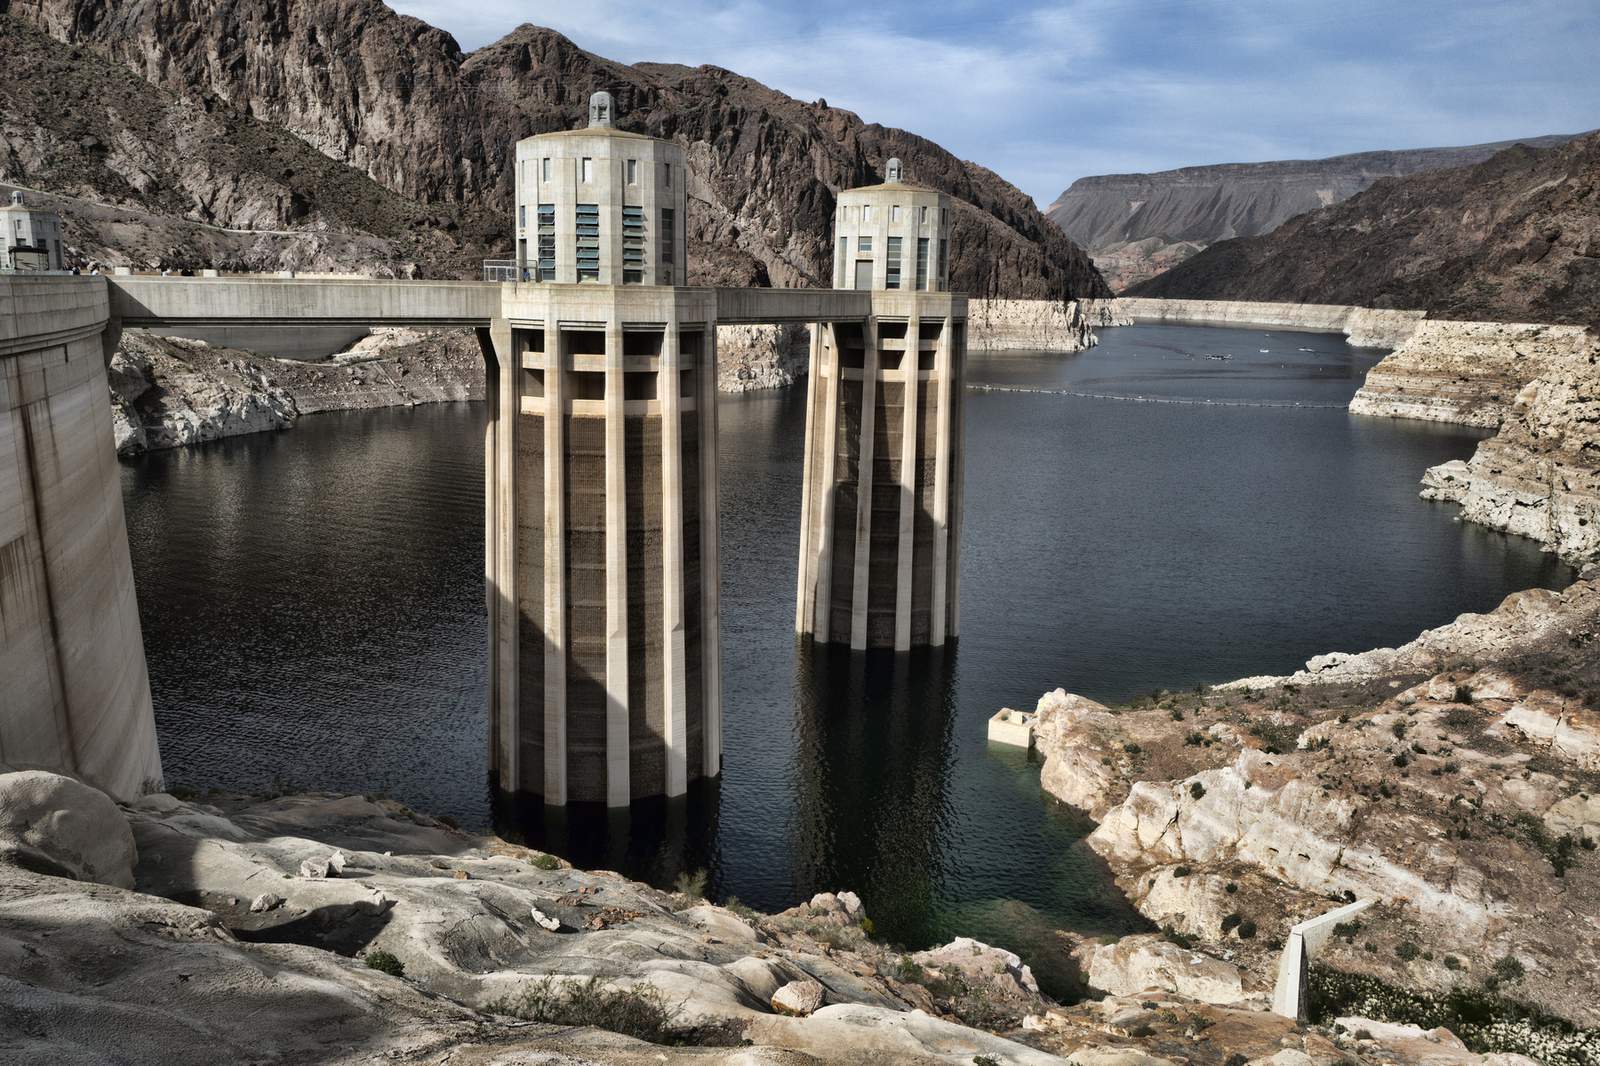 6 Western states blast Utah plan to tap Colorado River water